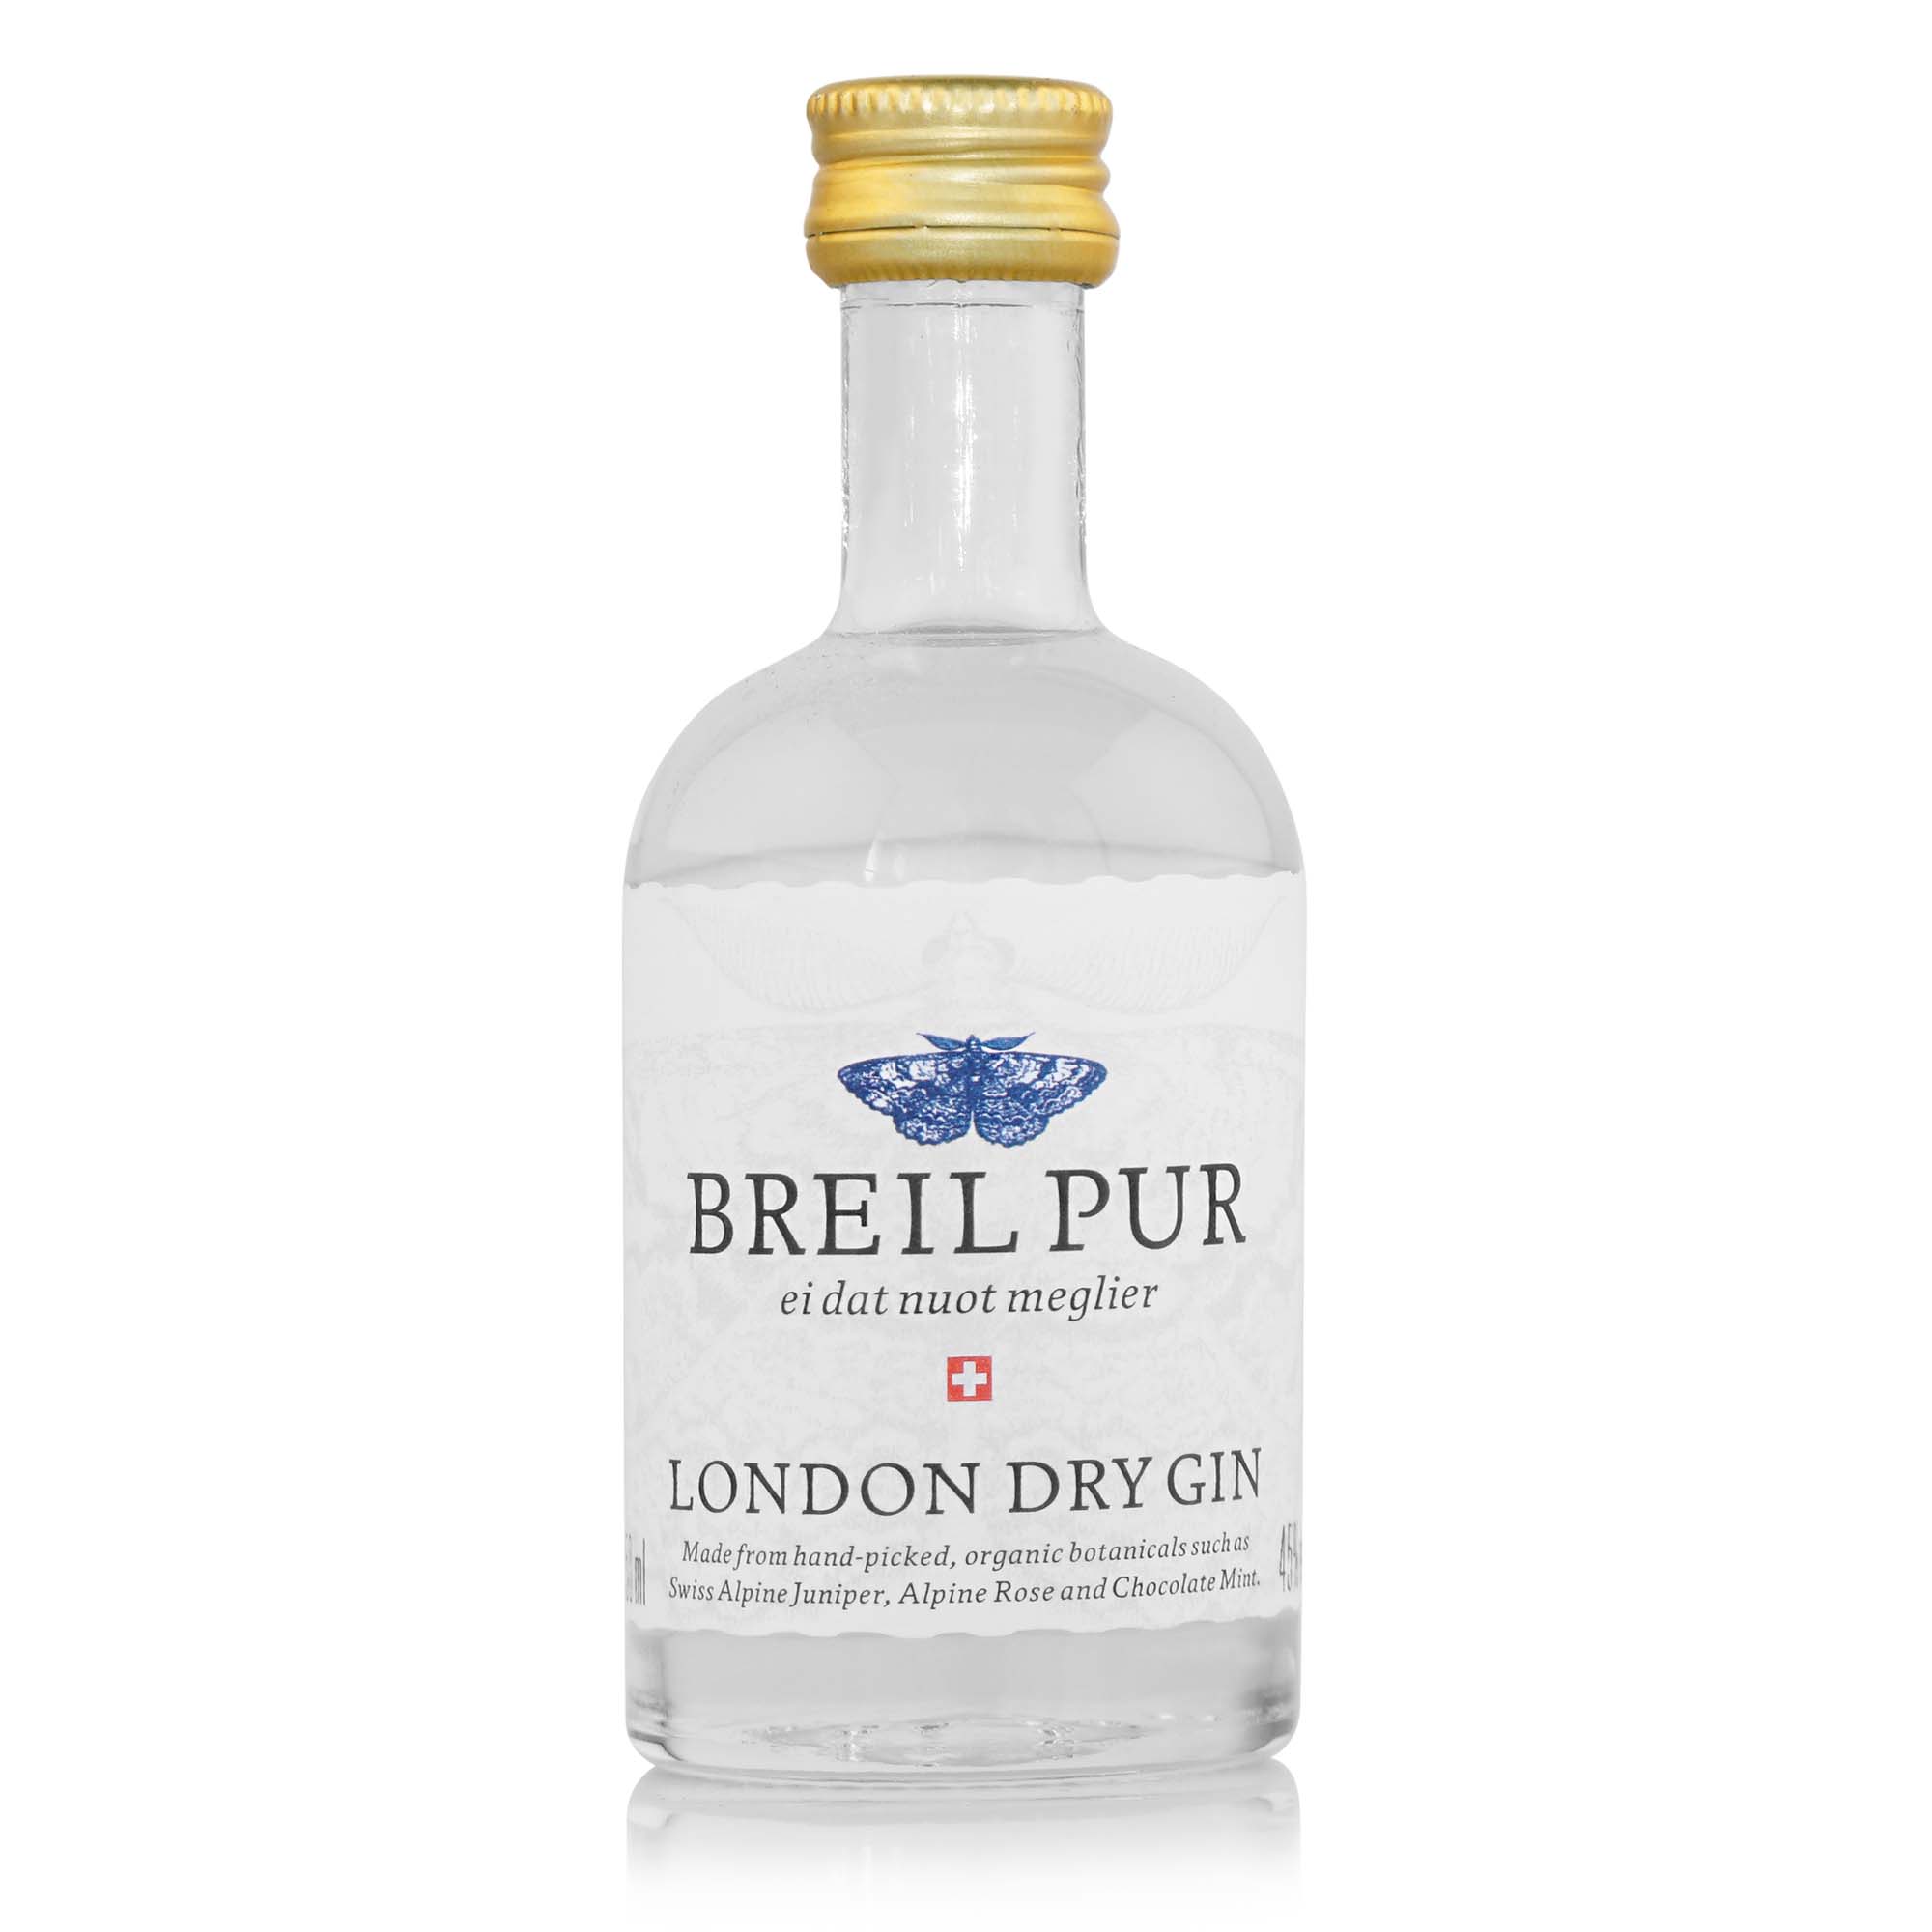 Breil Pur London Dry Gin, 50ml